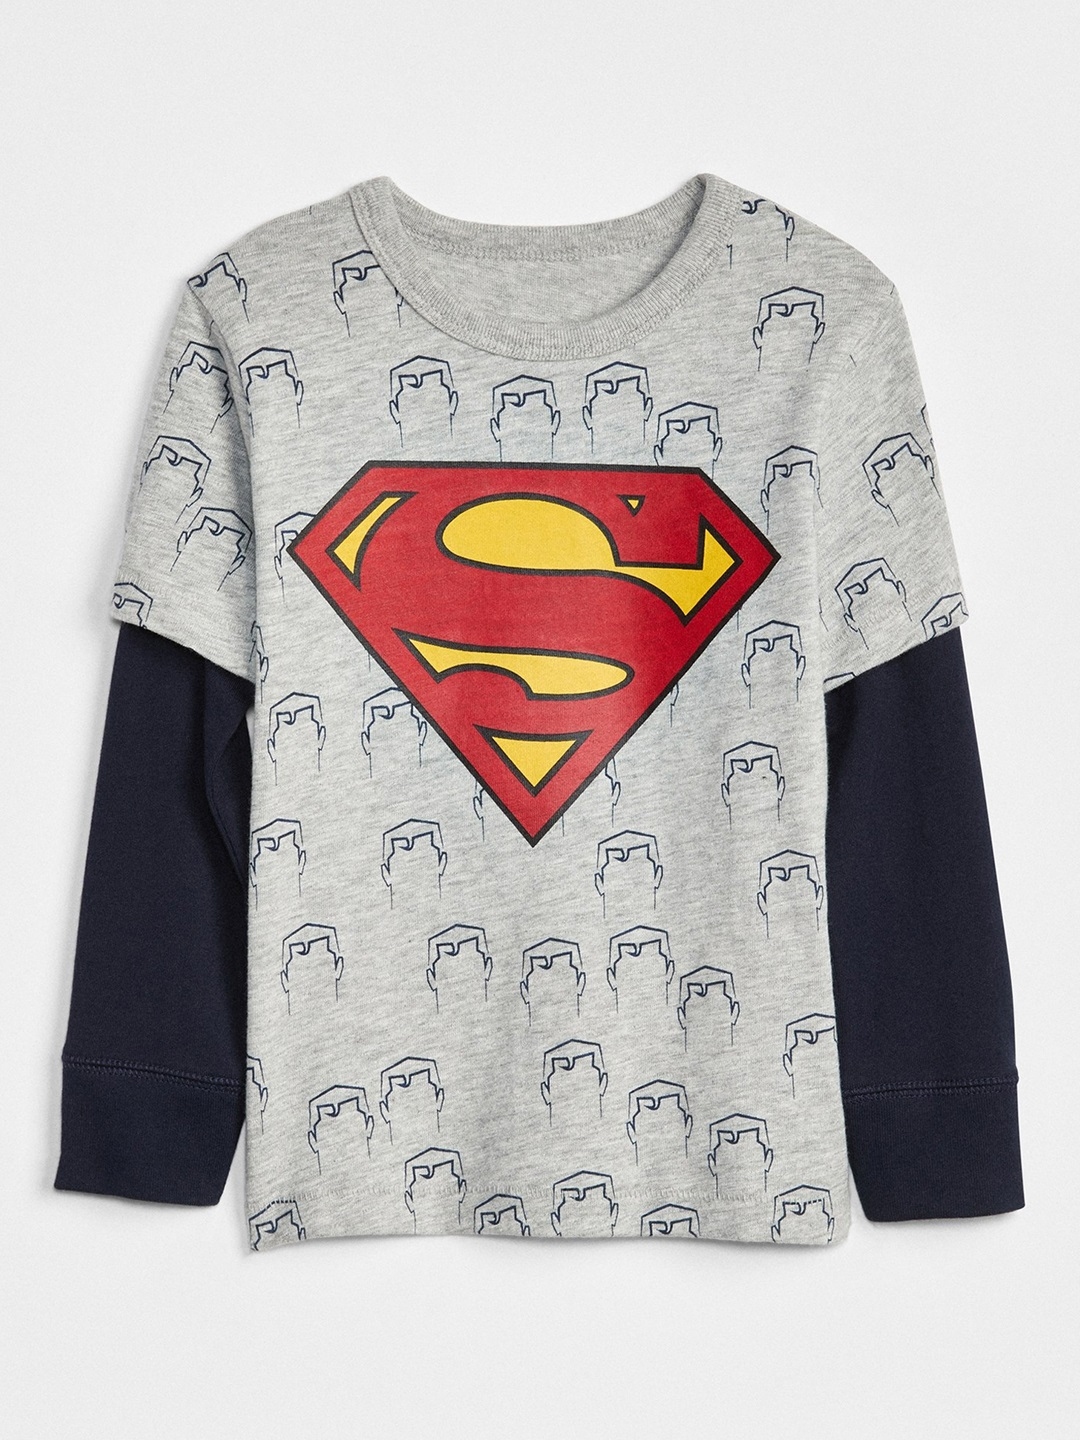 gap superman shirt